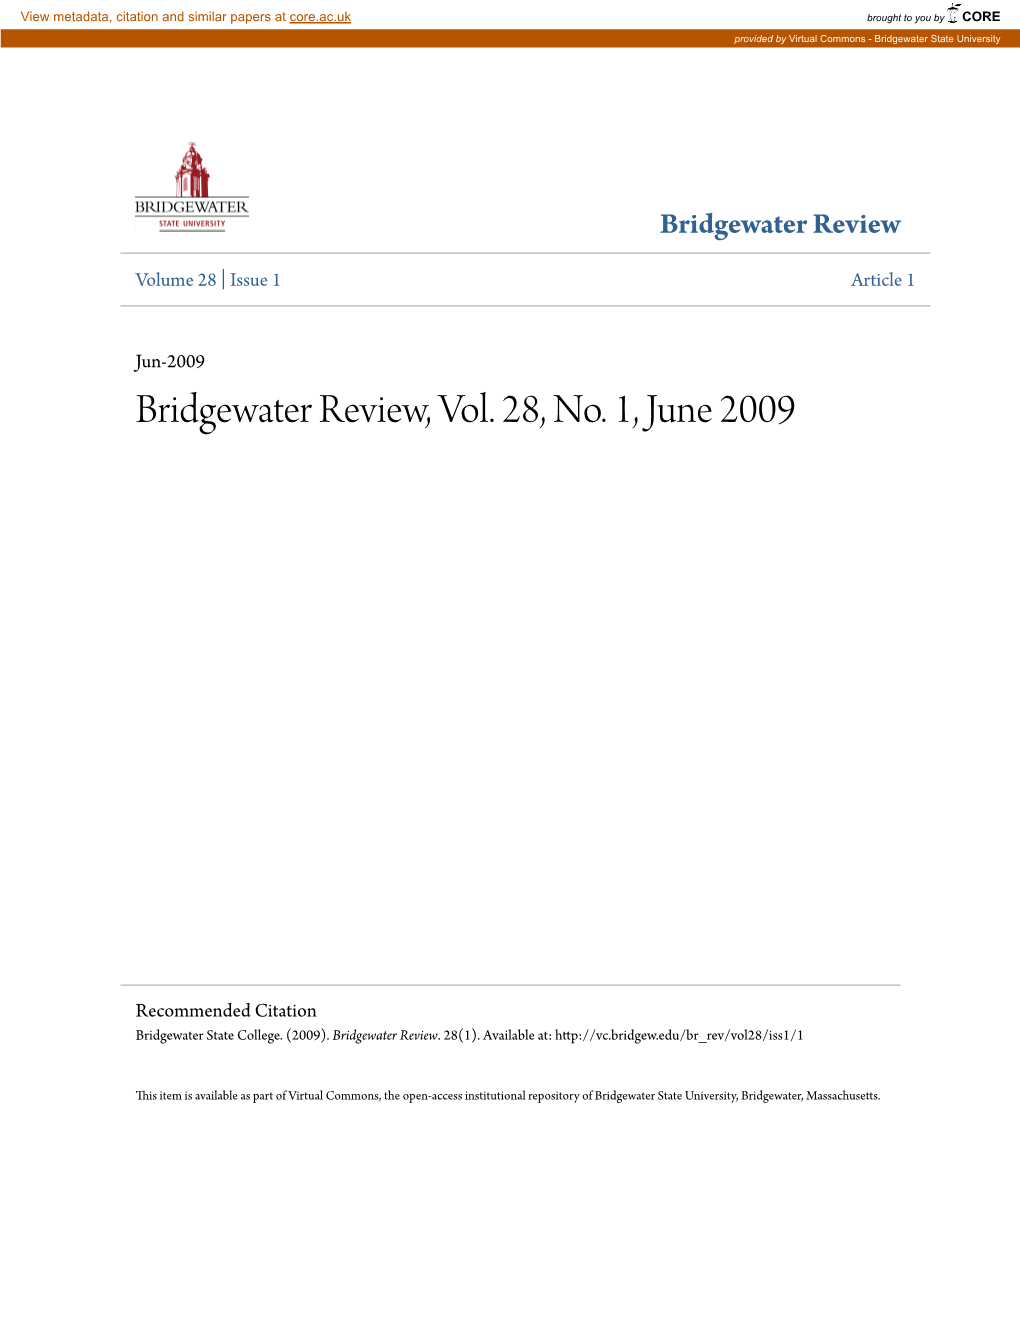 Bridgewater Review, Vol. 28, No. 1, June 2009